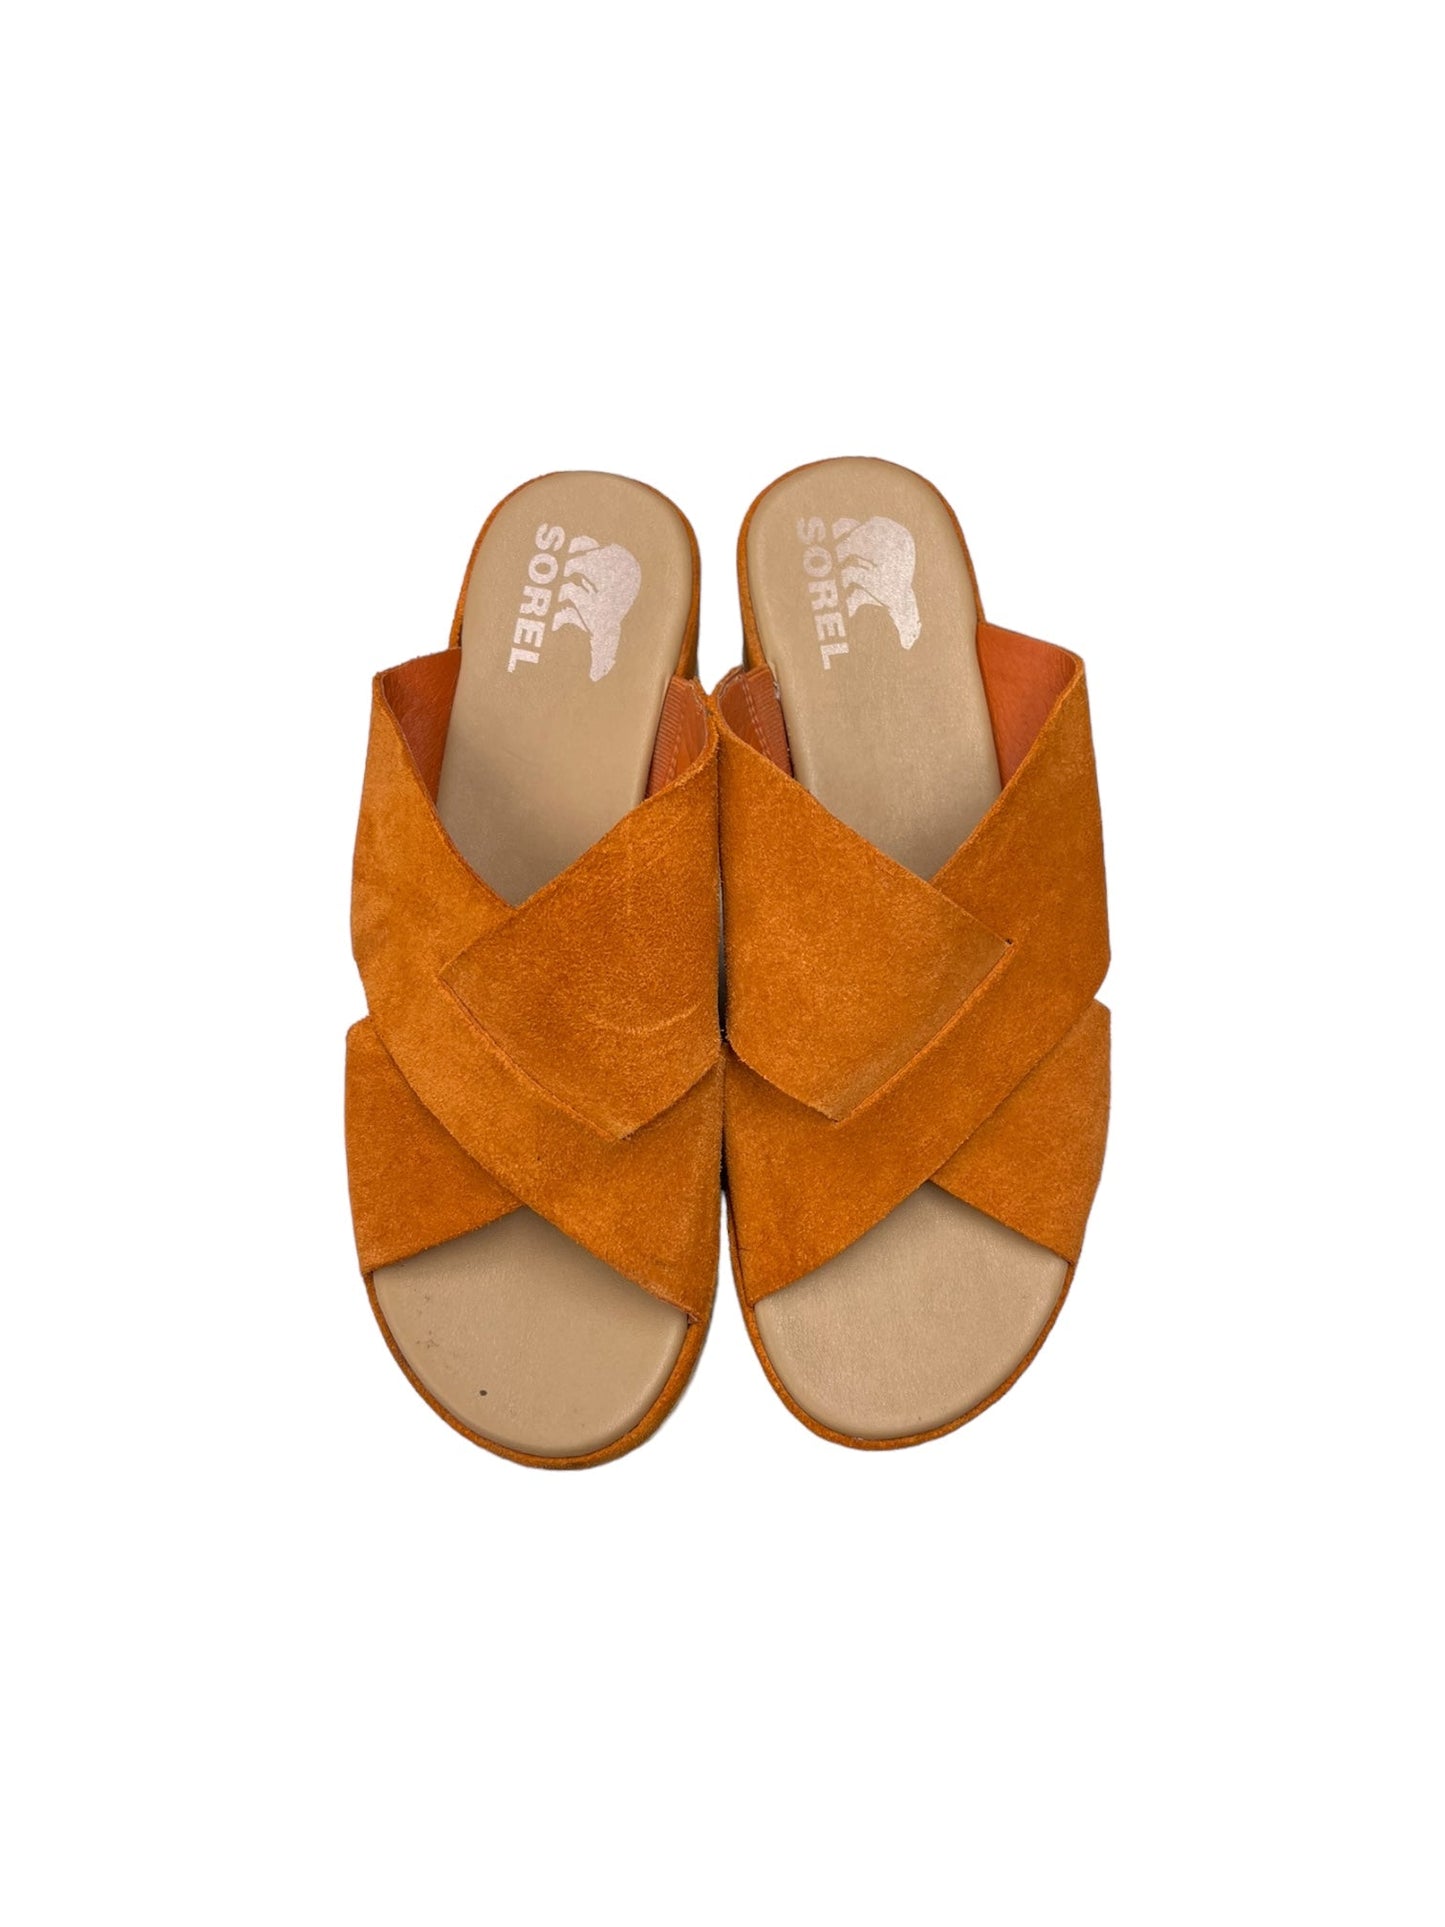 Yellow Sandals Heels Platform Sorel, Size 9